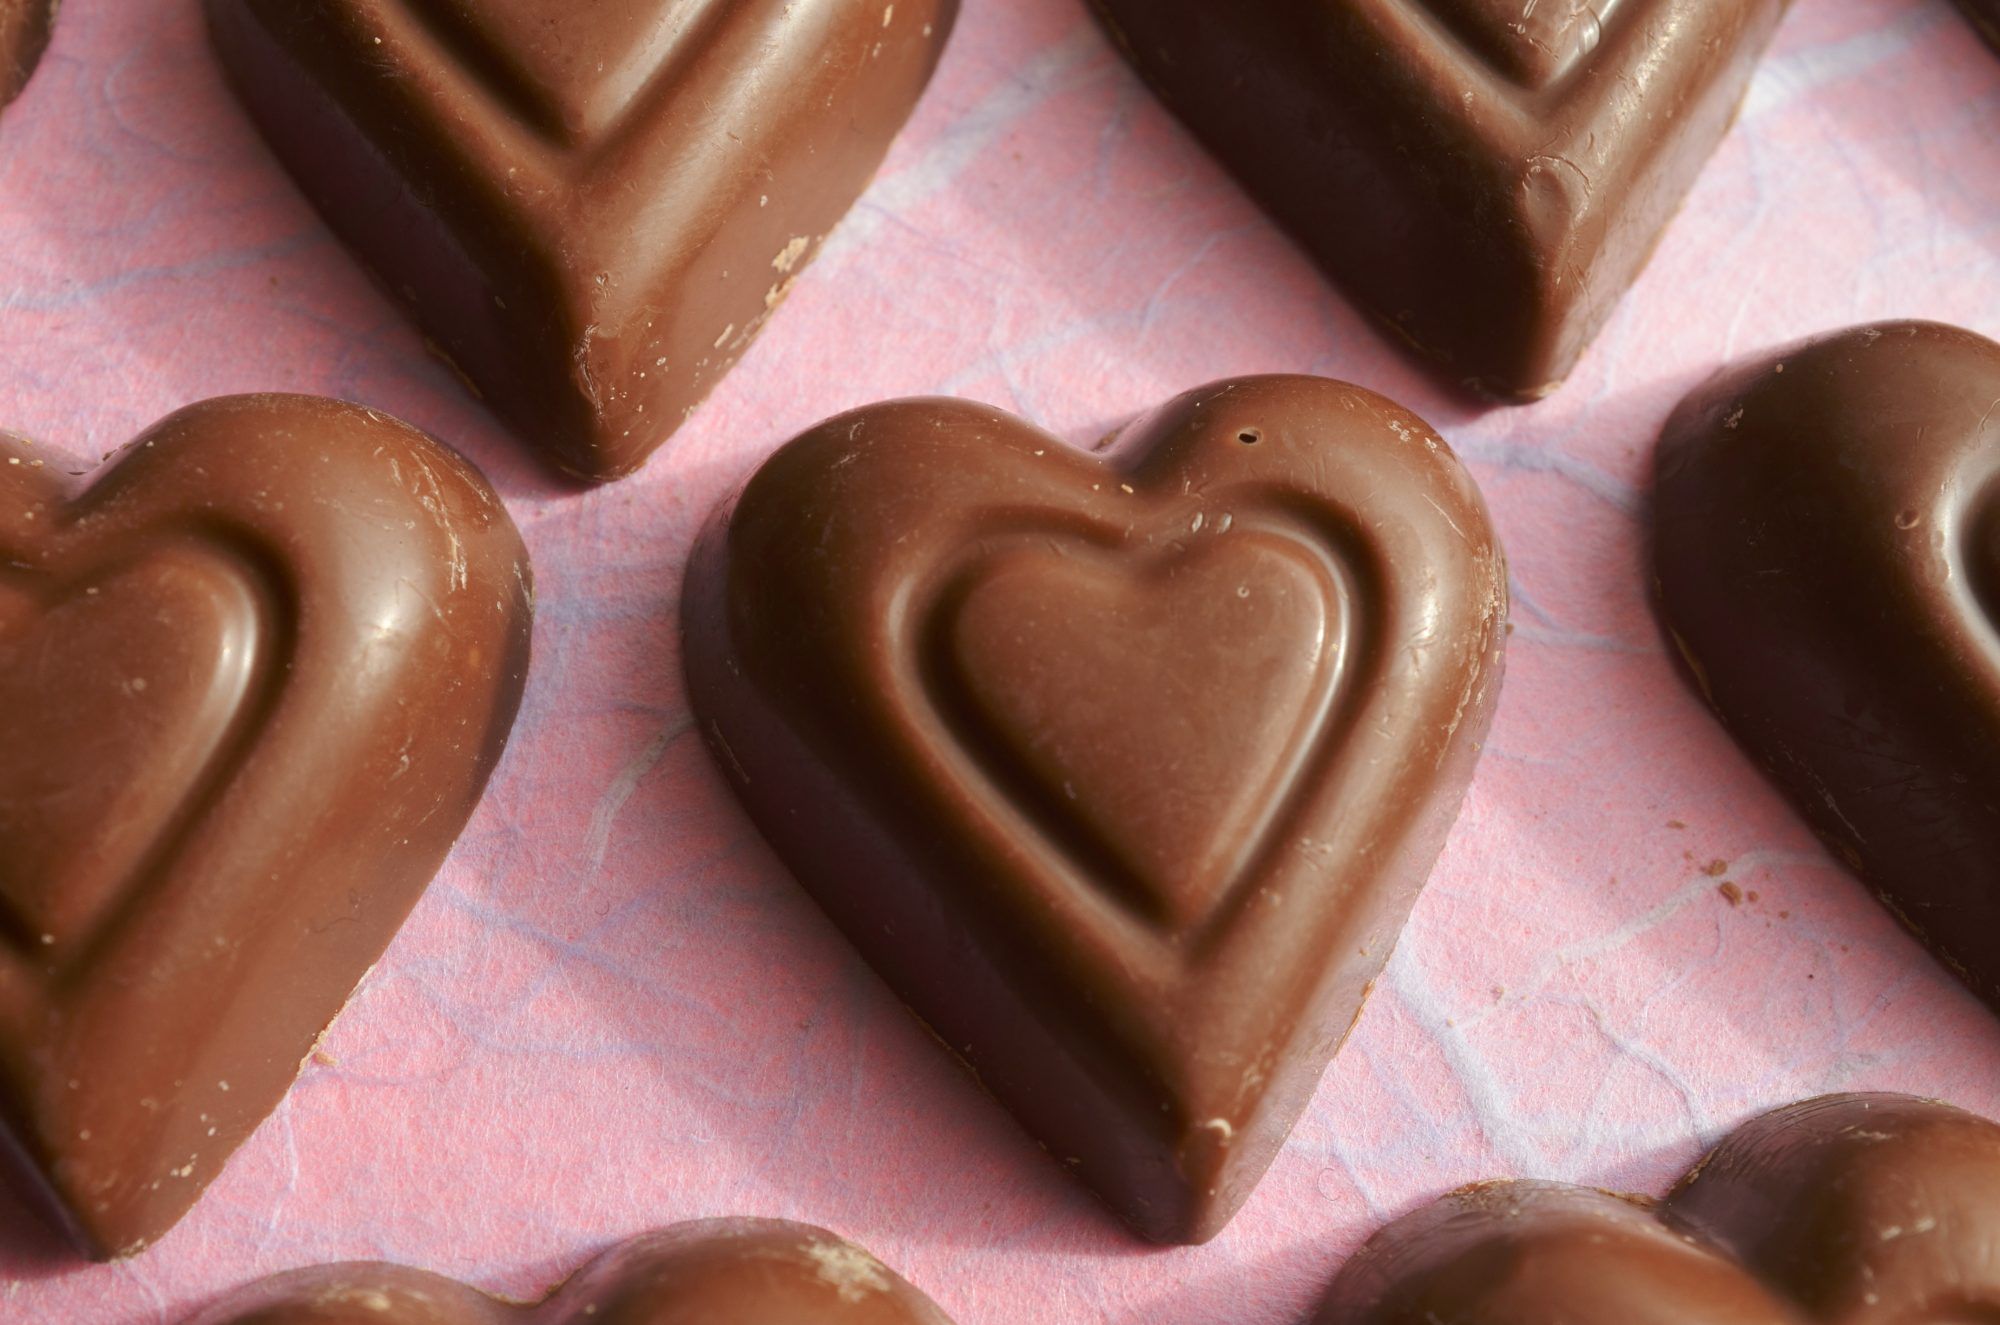 შოკოლადის ჯანმრთელობისთვის სასარგებლო თვისებები: შოკოლადის გულები